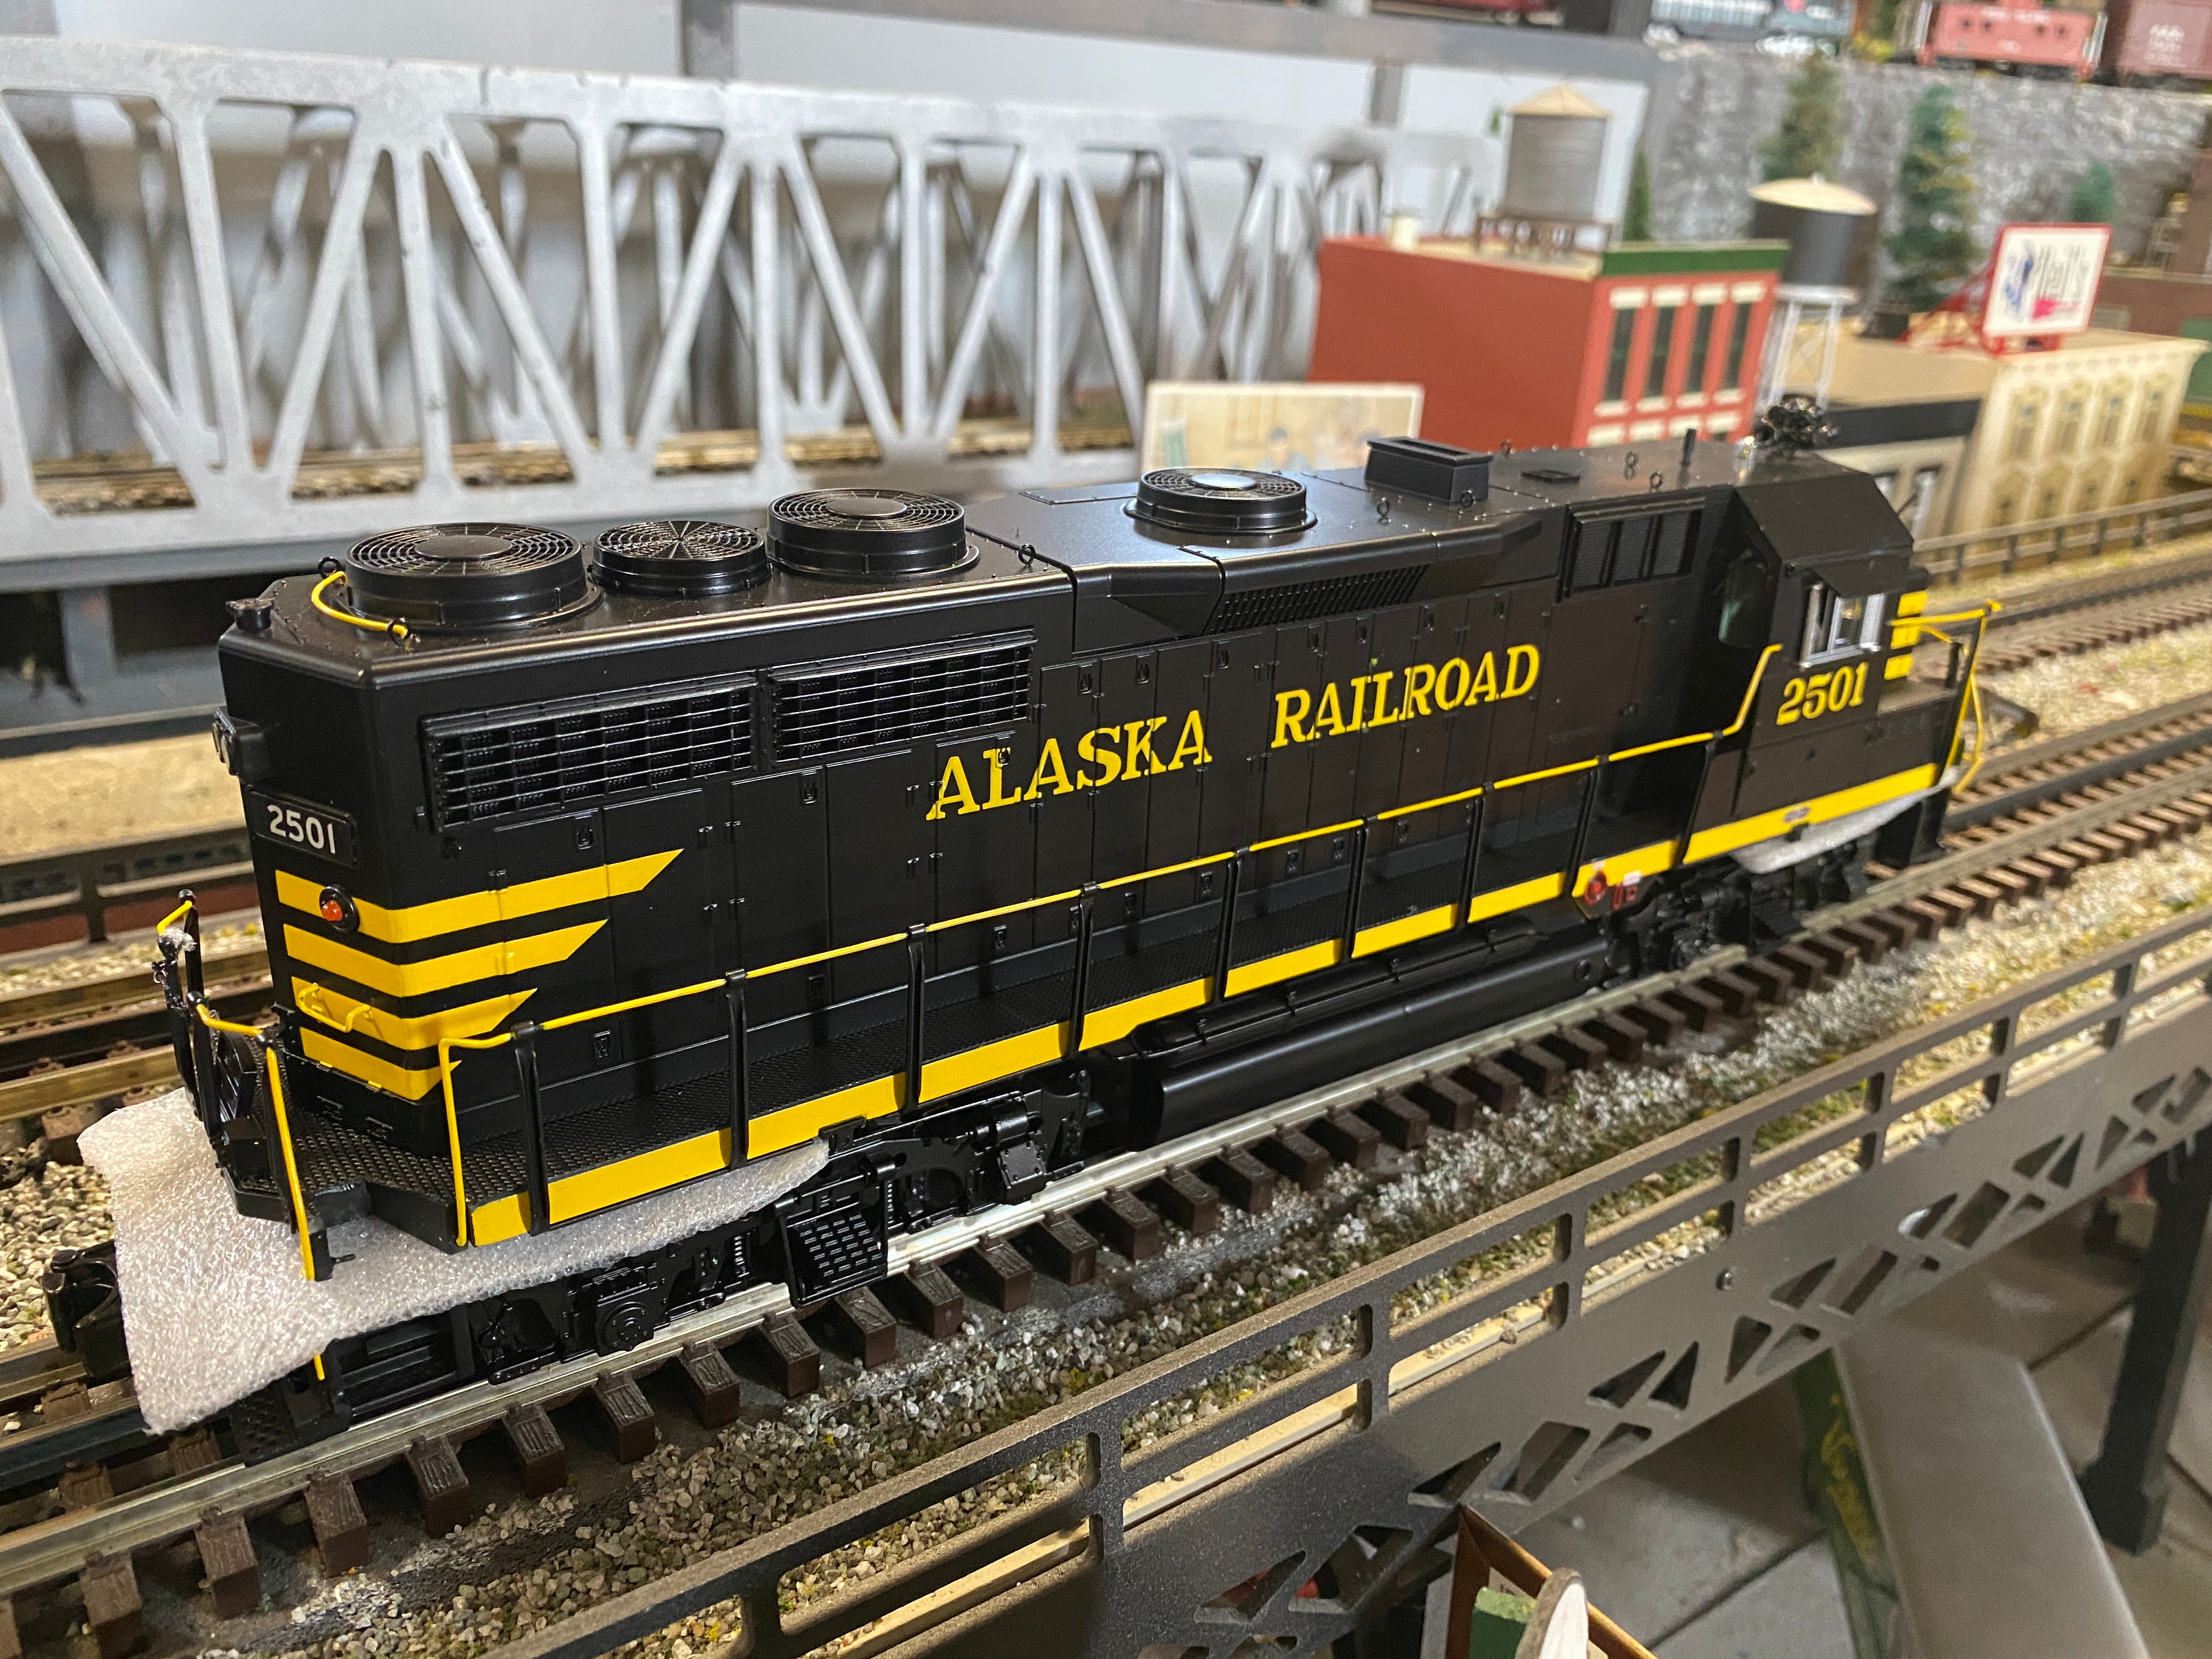 MTH 20-21551-1 - GP-35 Diesel Engine "Alaska Railroad" #2503 w/ PS3